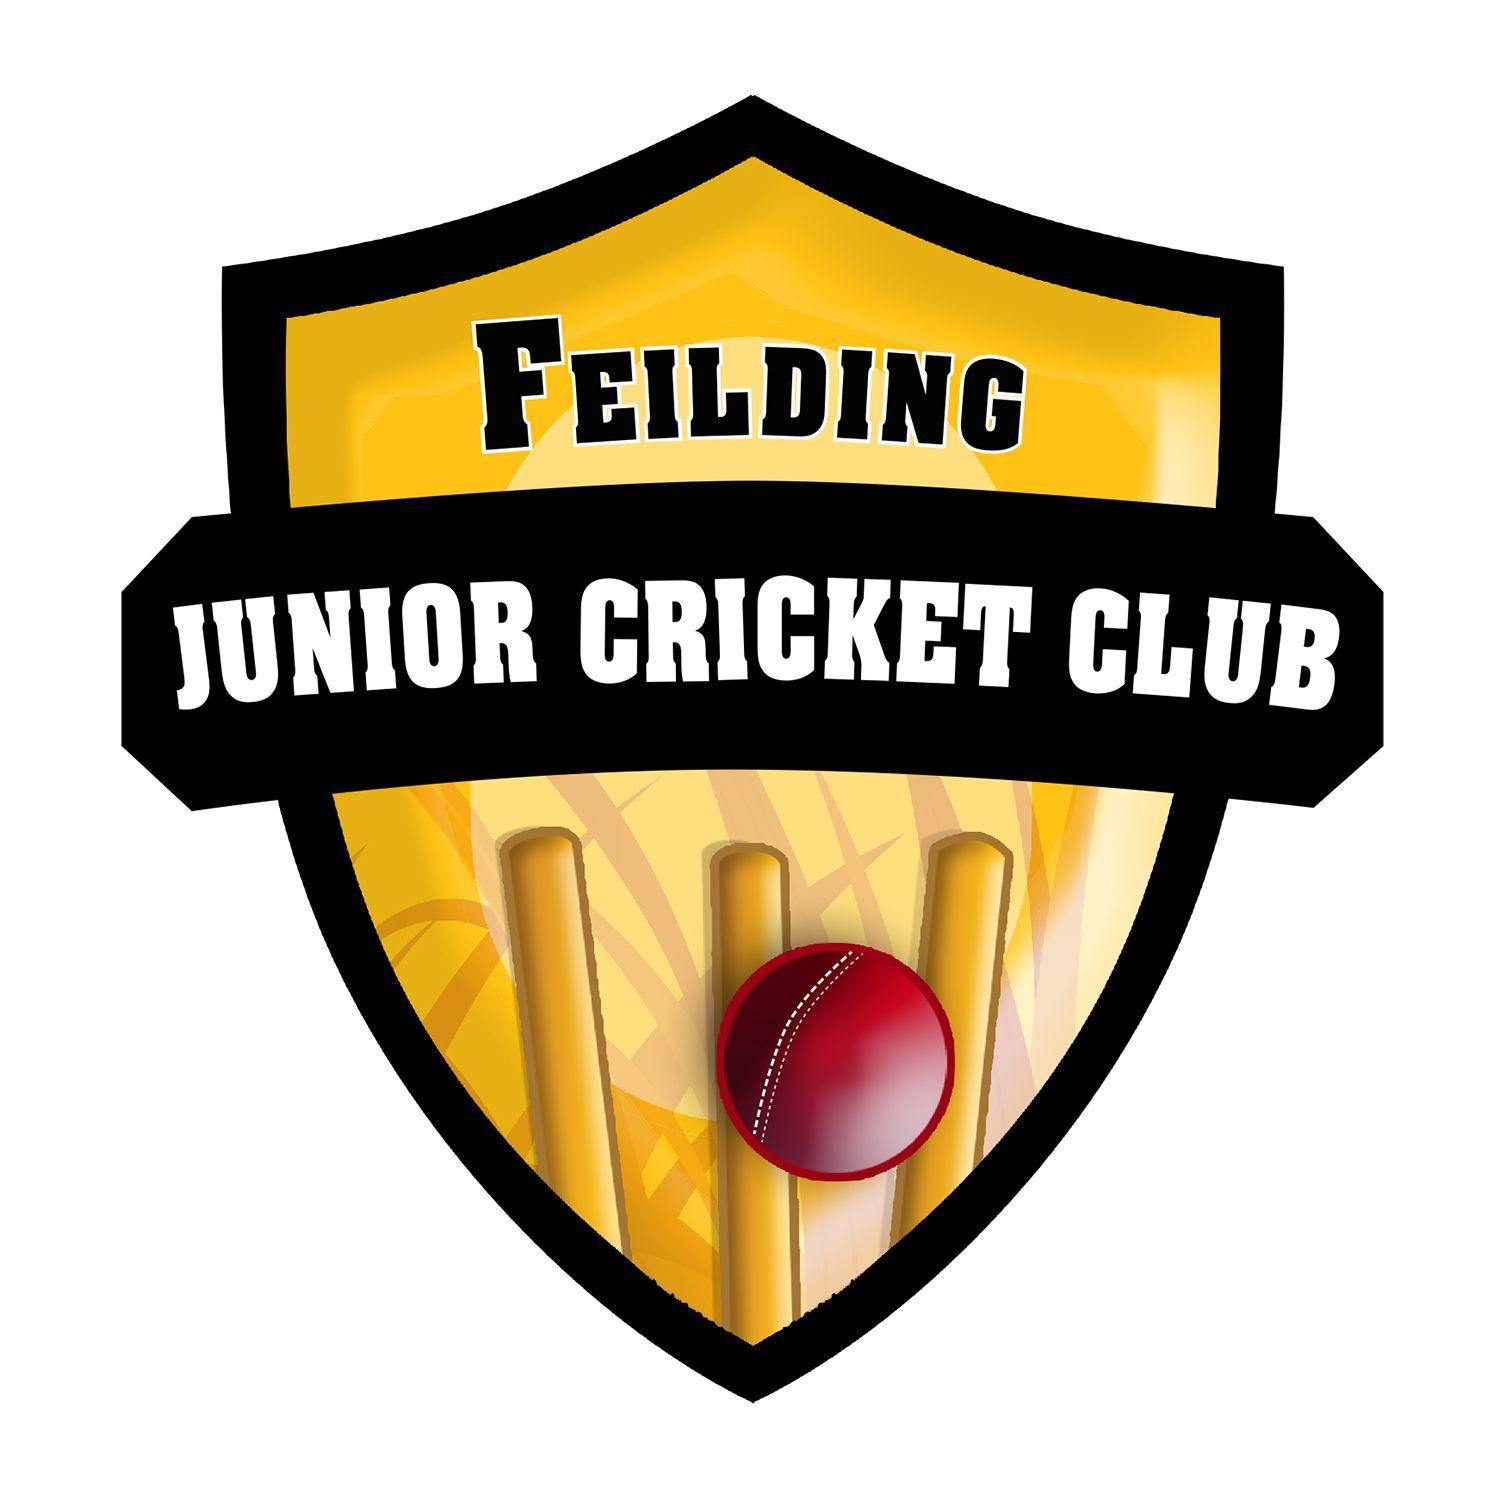 Cricket Club Logo - Professional, Masculine, Club Logo Design for Feilding Junior